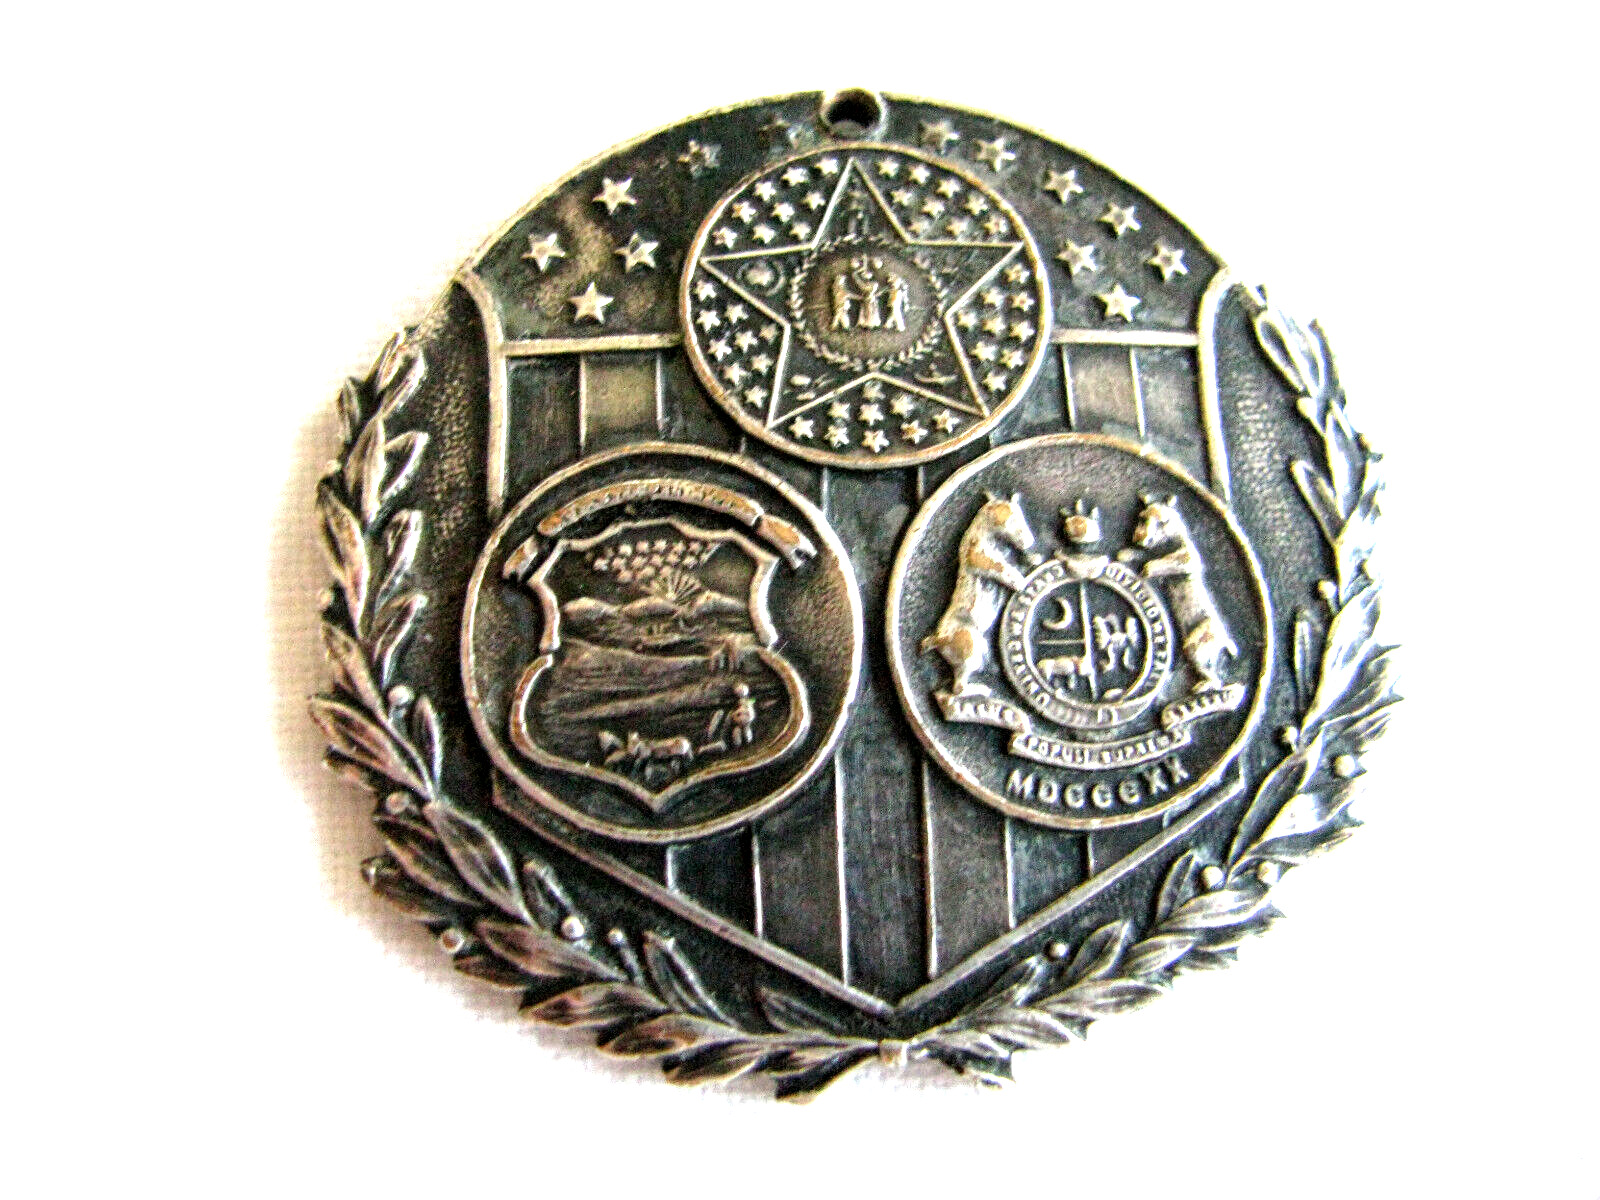 Antique Missouri Compromise Medallion or Medal-Kansas Nebraska Act 1854